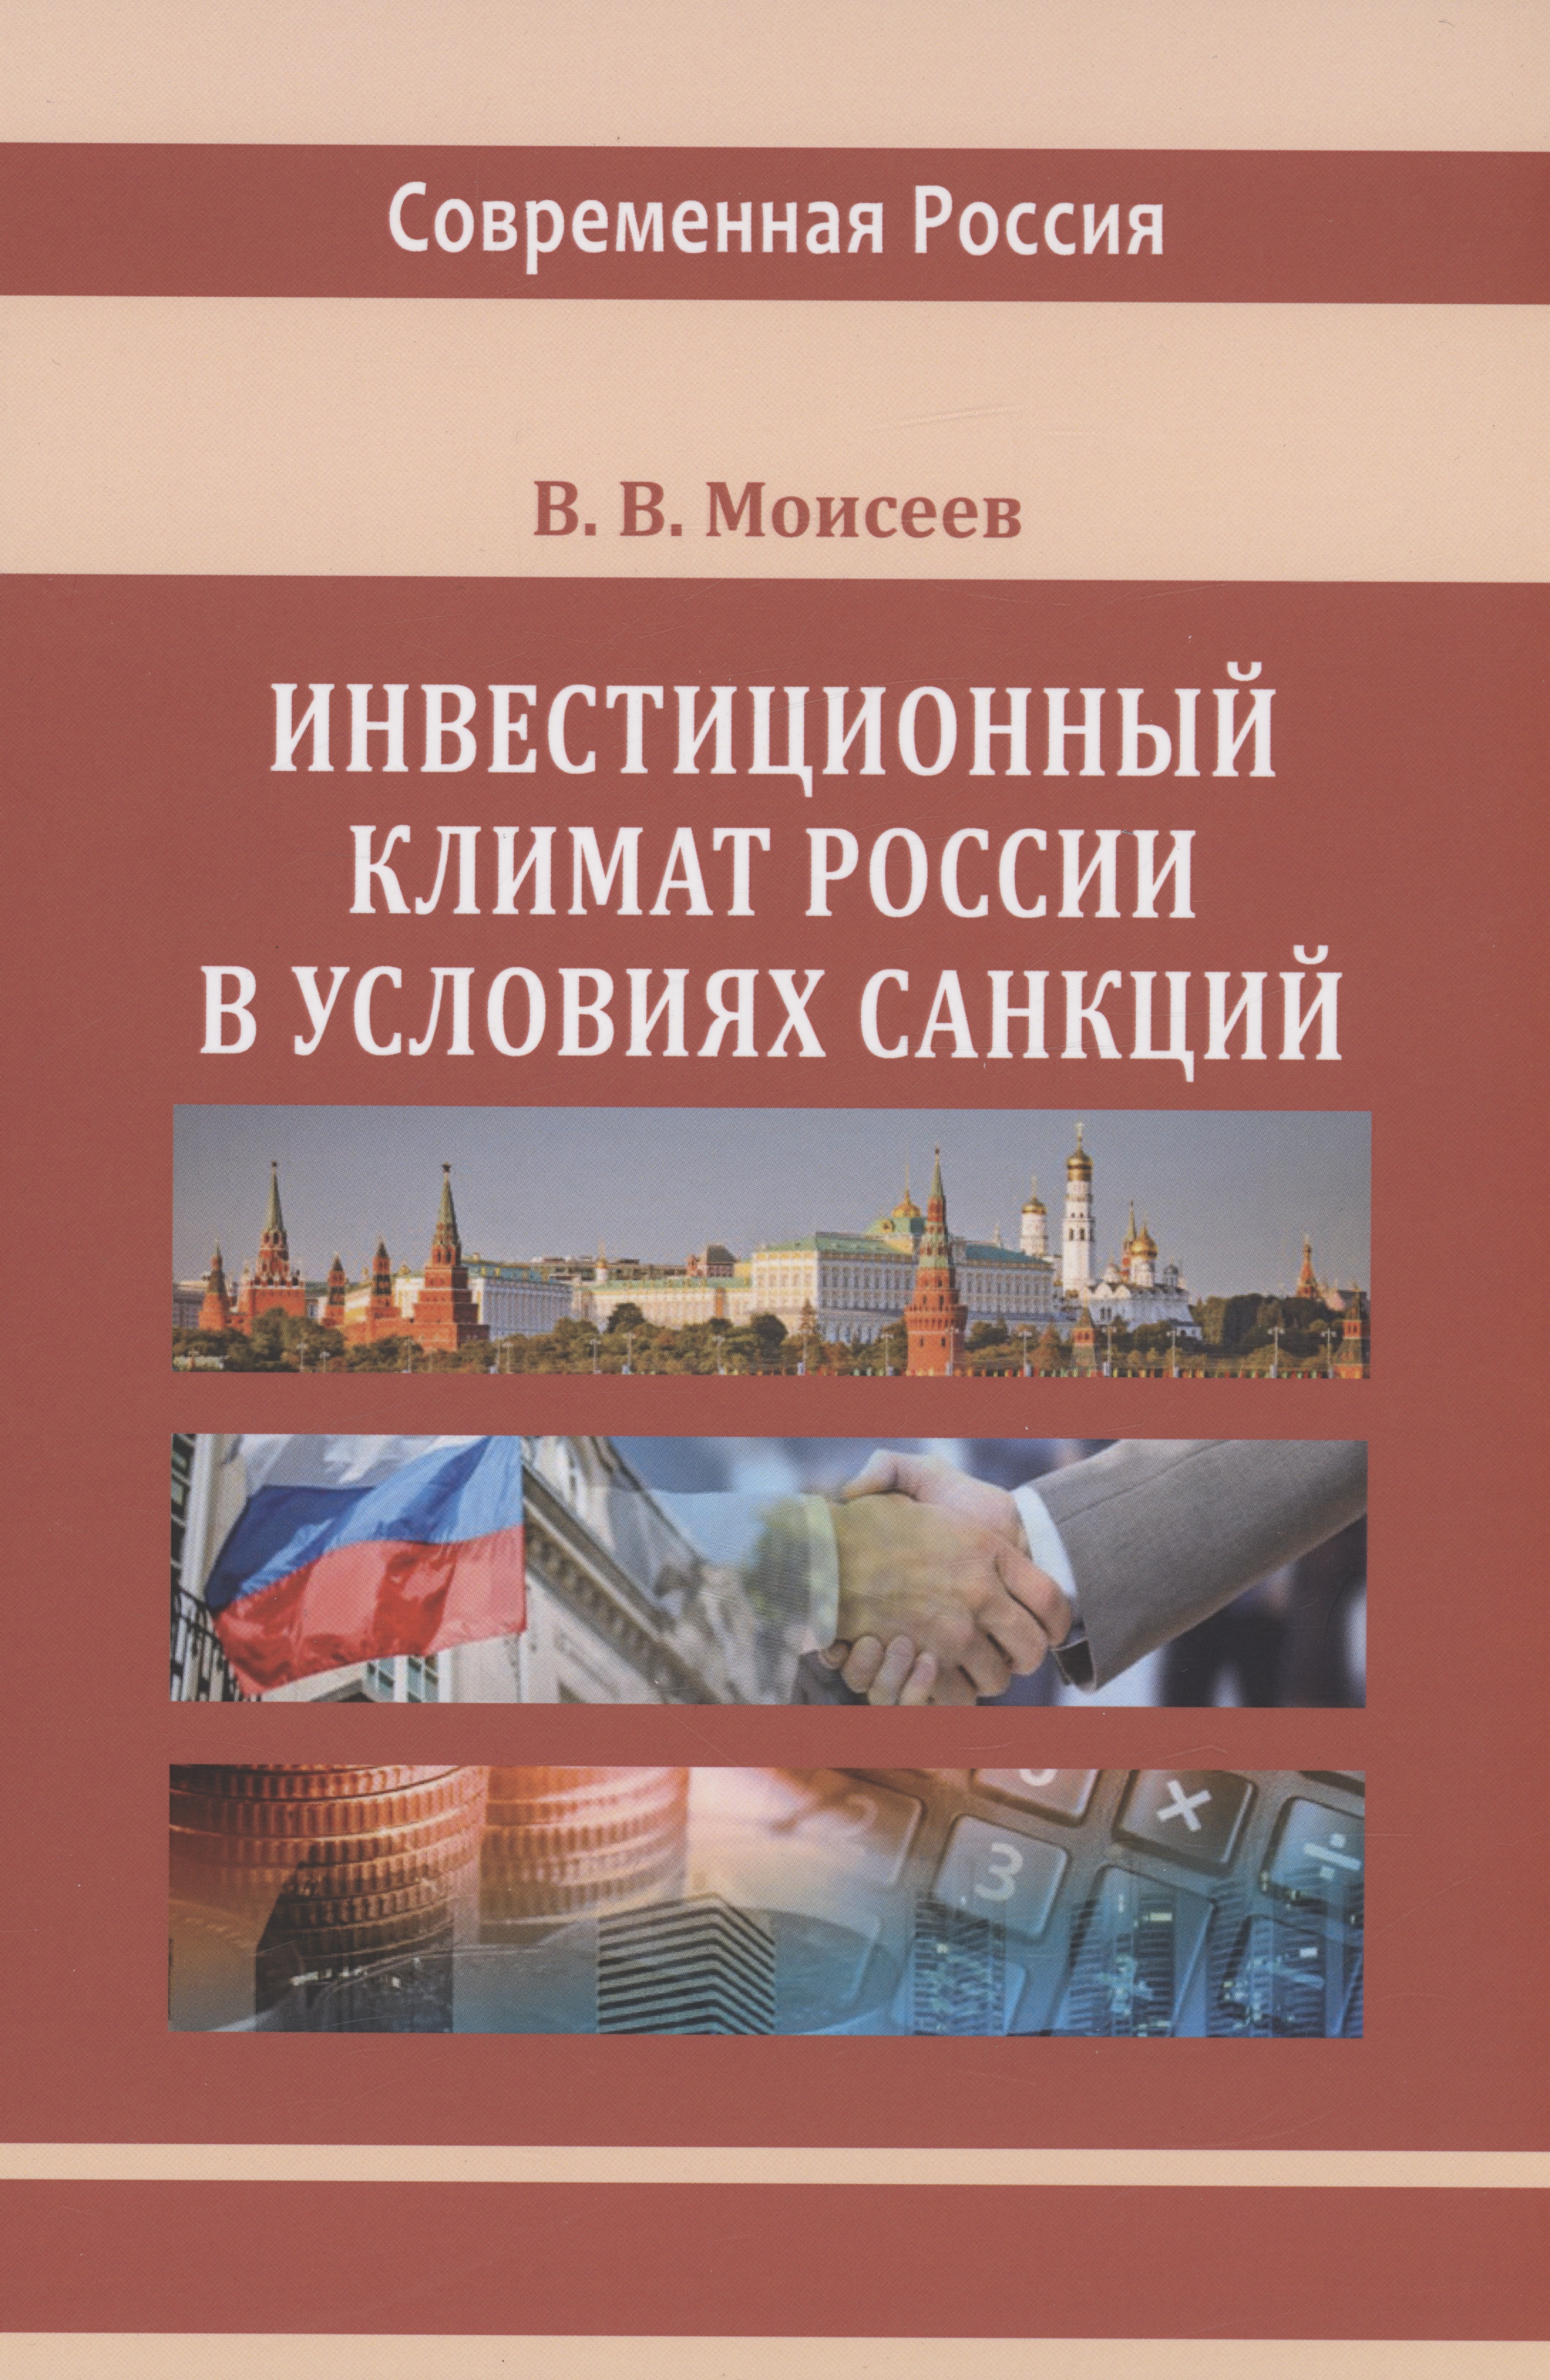 Моисеев Владимир Викторович - Инвестиционный климат России в условиях санкций